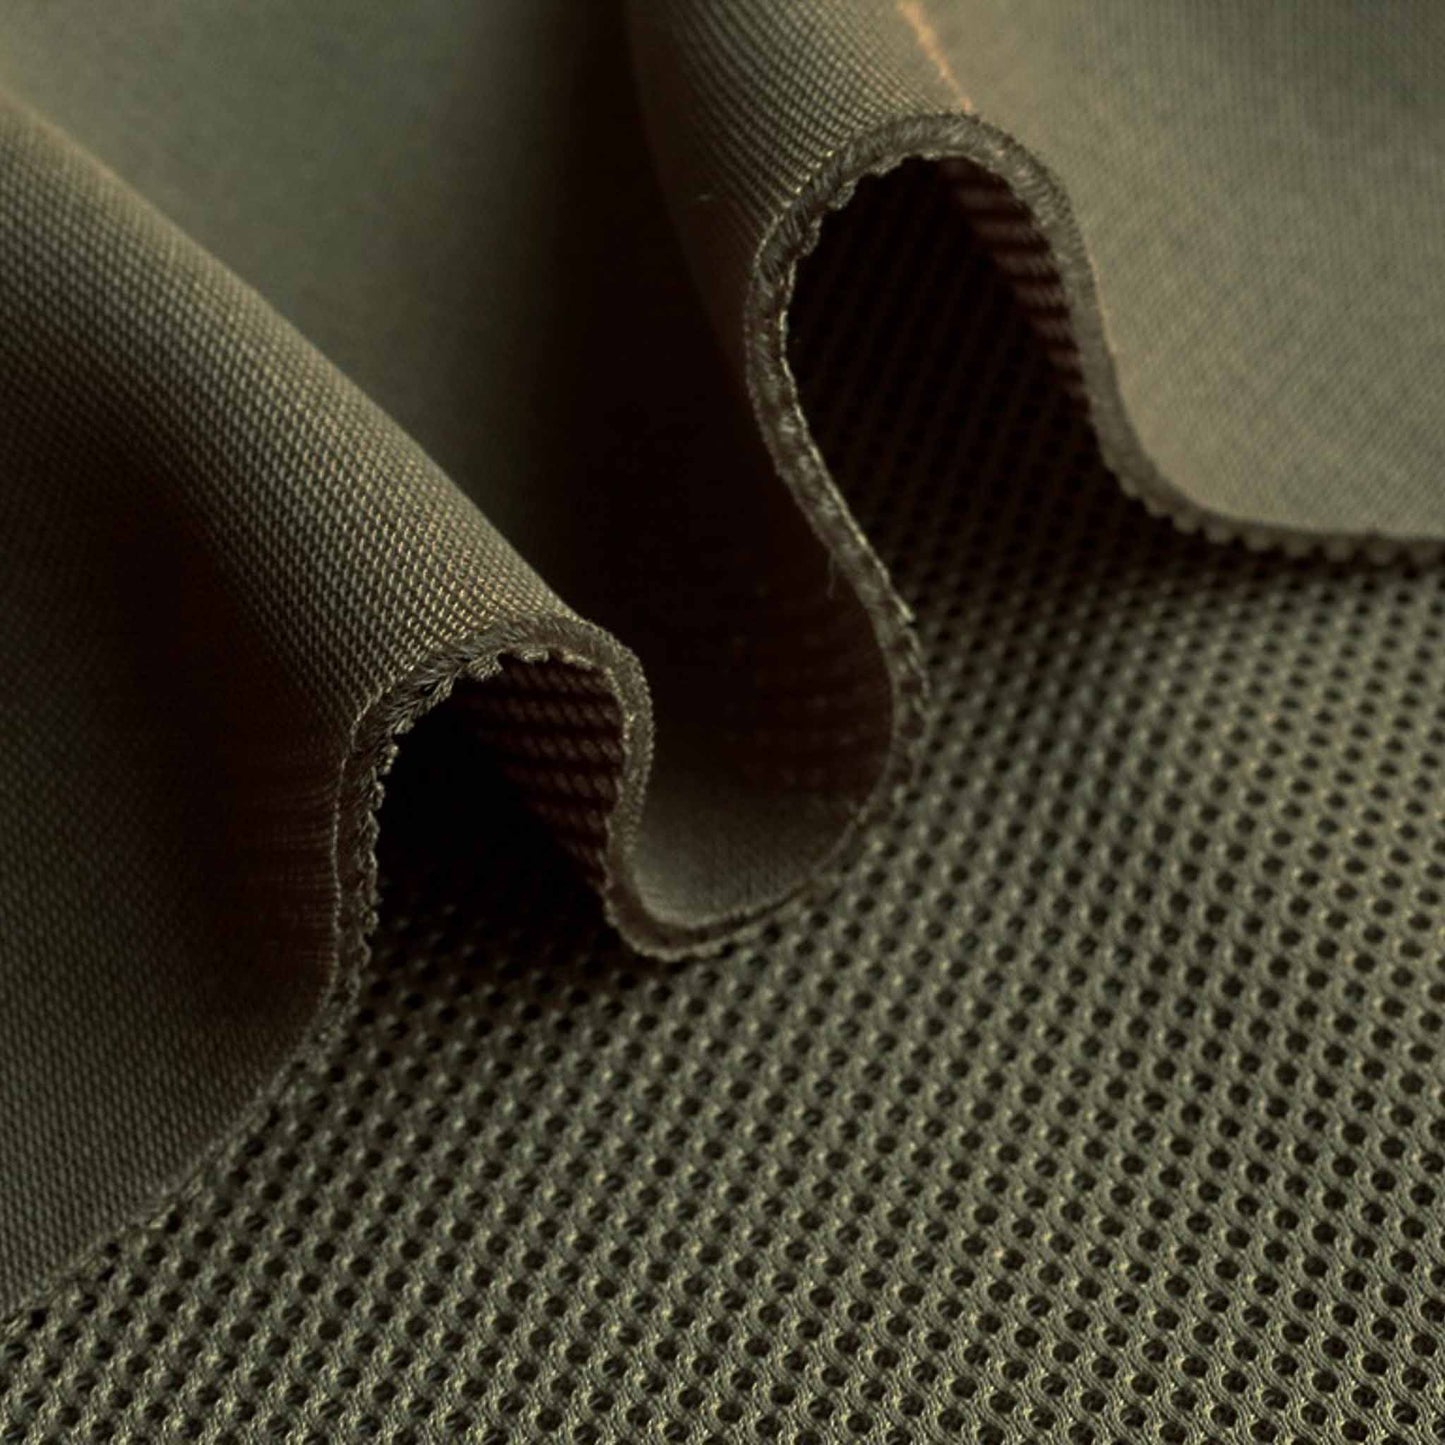 airtex 3D spacer mesh sports fabric details in khaki green